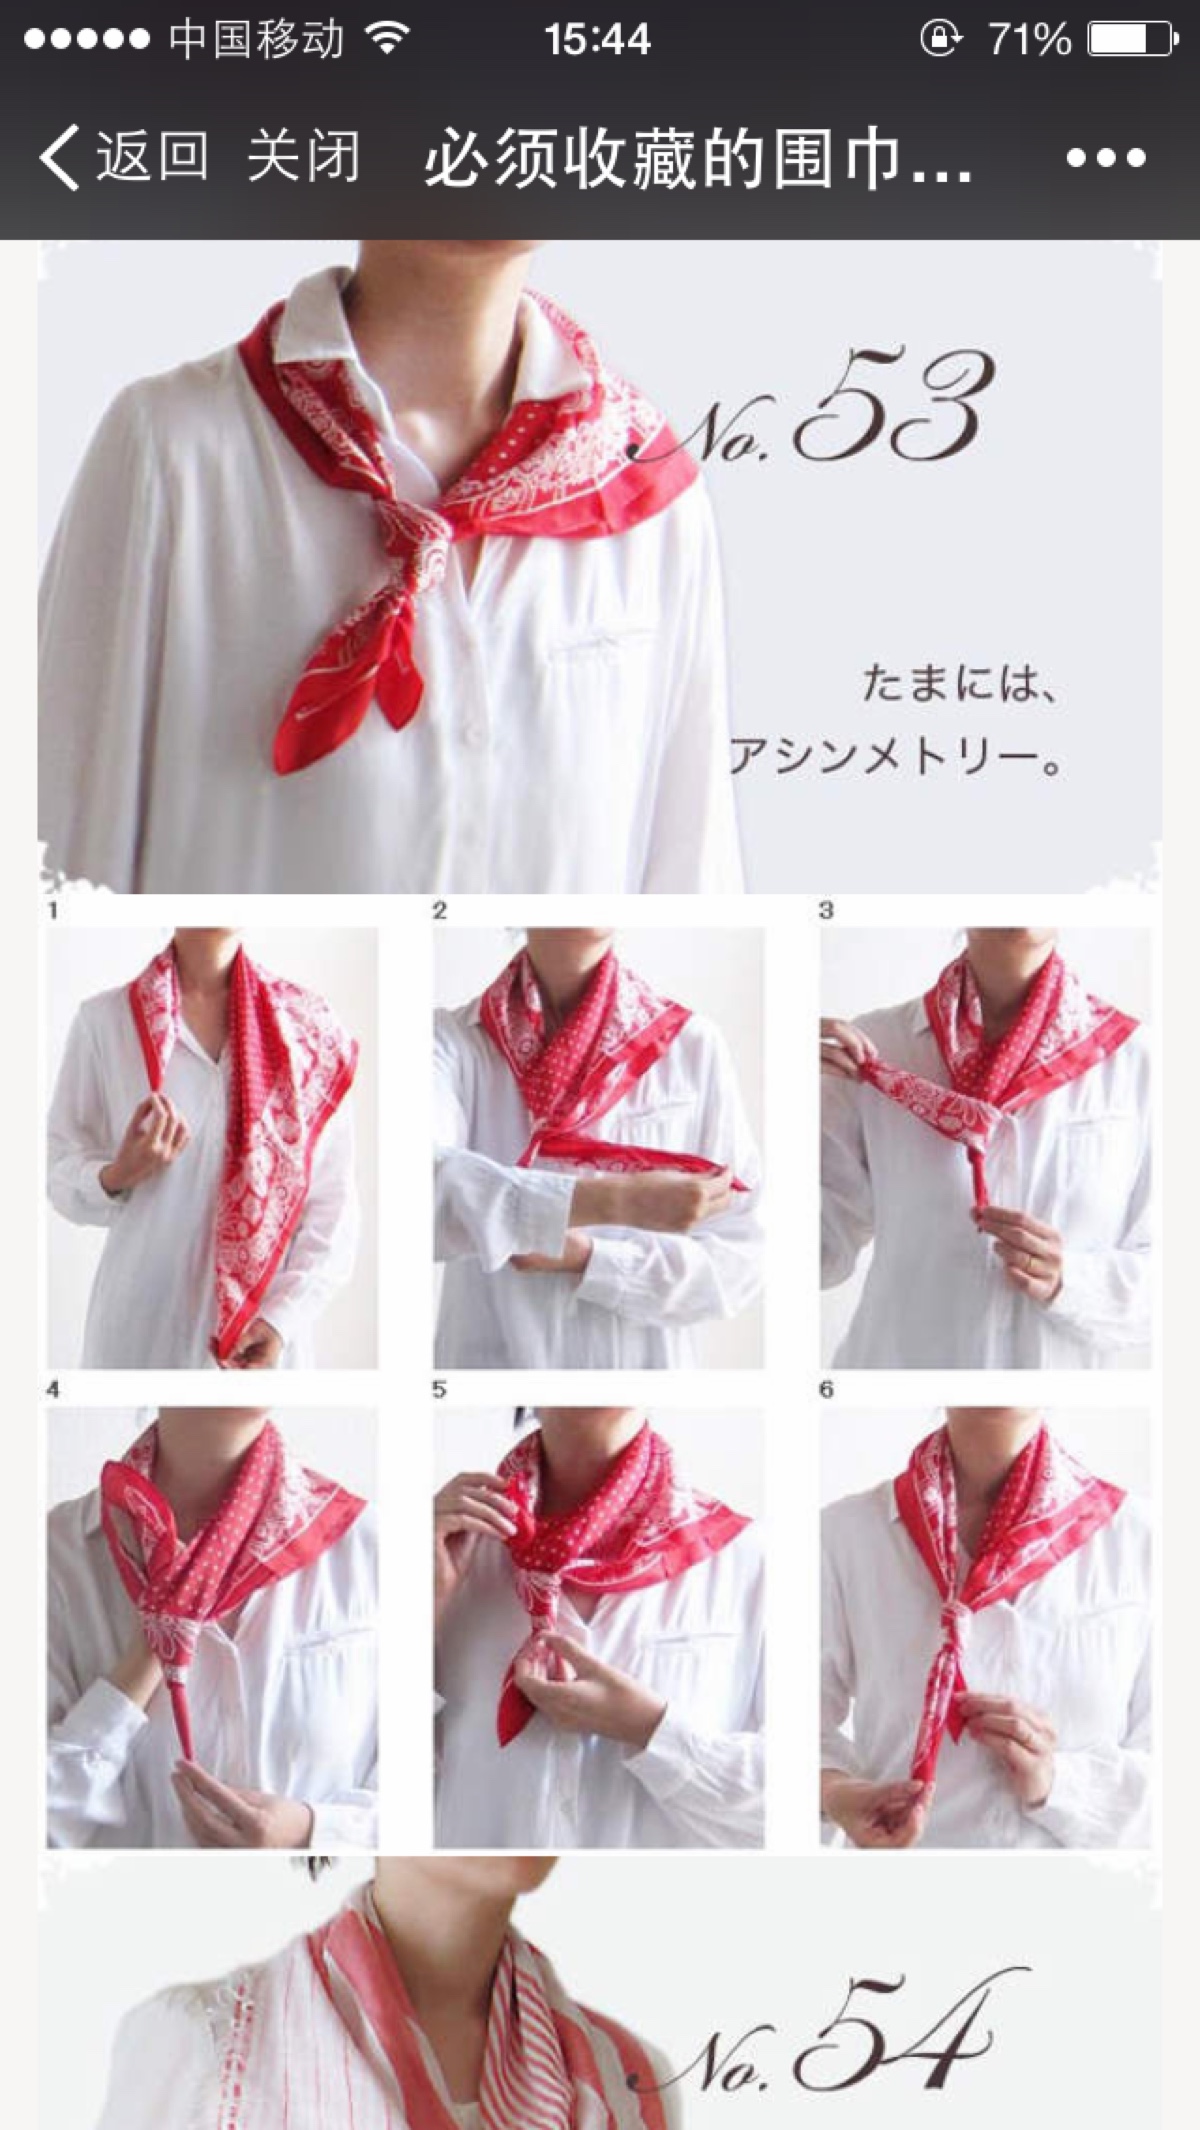 长方形围巾的各种围法图片